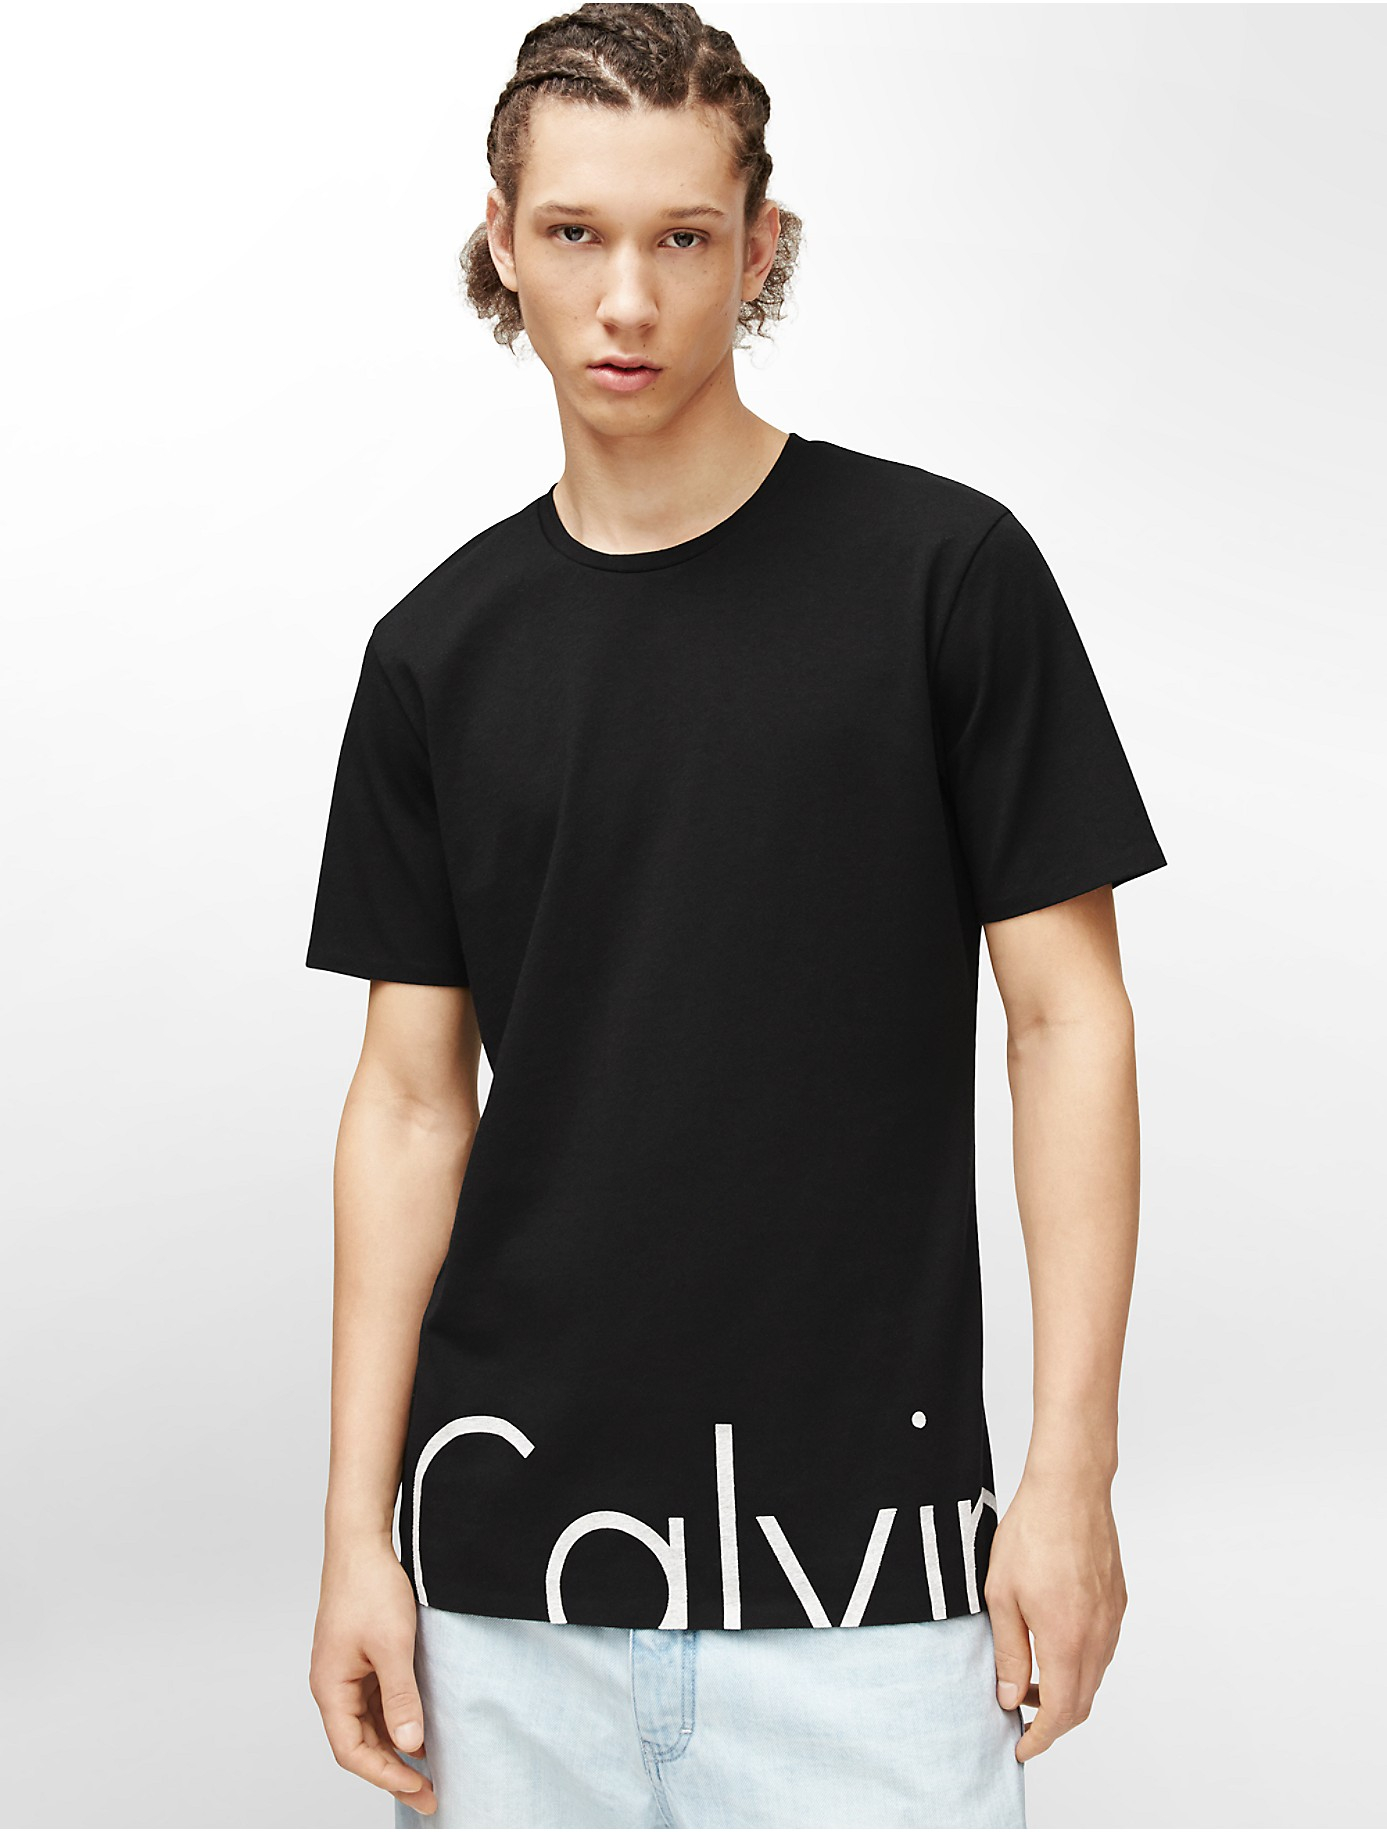 Calvin Klein Jeans Long Logo Short Sleeve Shirt in Black for Men - Lyst